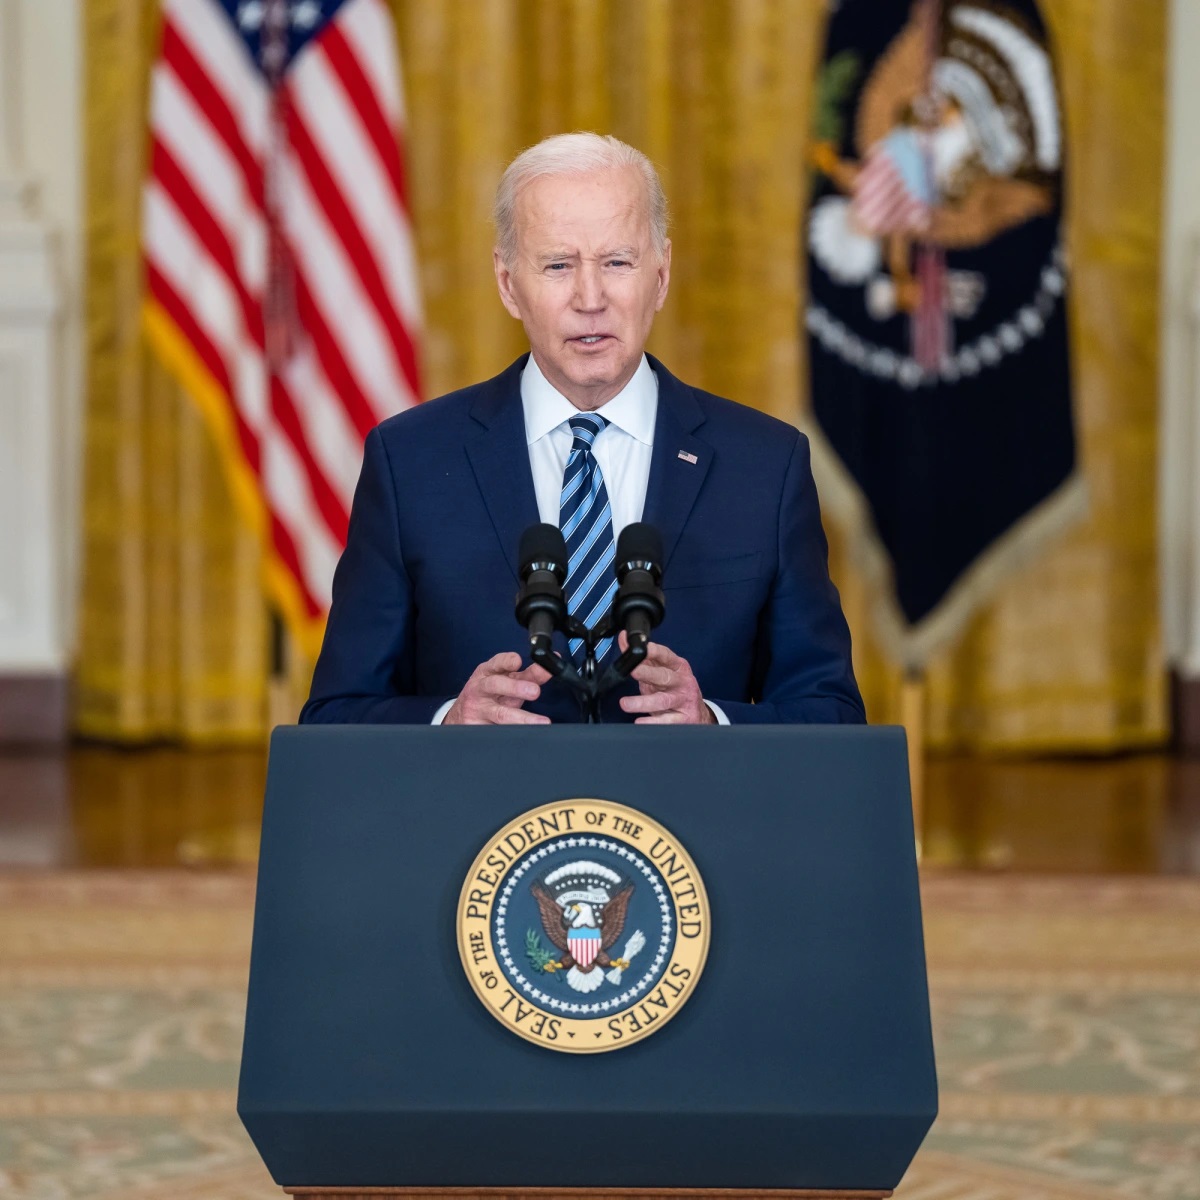 Prezident Spojených států, Joe Biden, byl zaregistrován tento čtvrtek během oficiálního oznámení v Bílém domě ve Washingtonu DC (USA). Biden minulé pondělí řekl, že je „znepokojen a znepokojen“ nedostatkem svobody tisku v Afghánistánu, kde je Taliban u moci od loňského stažení USA.